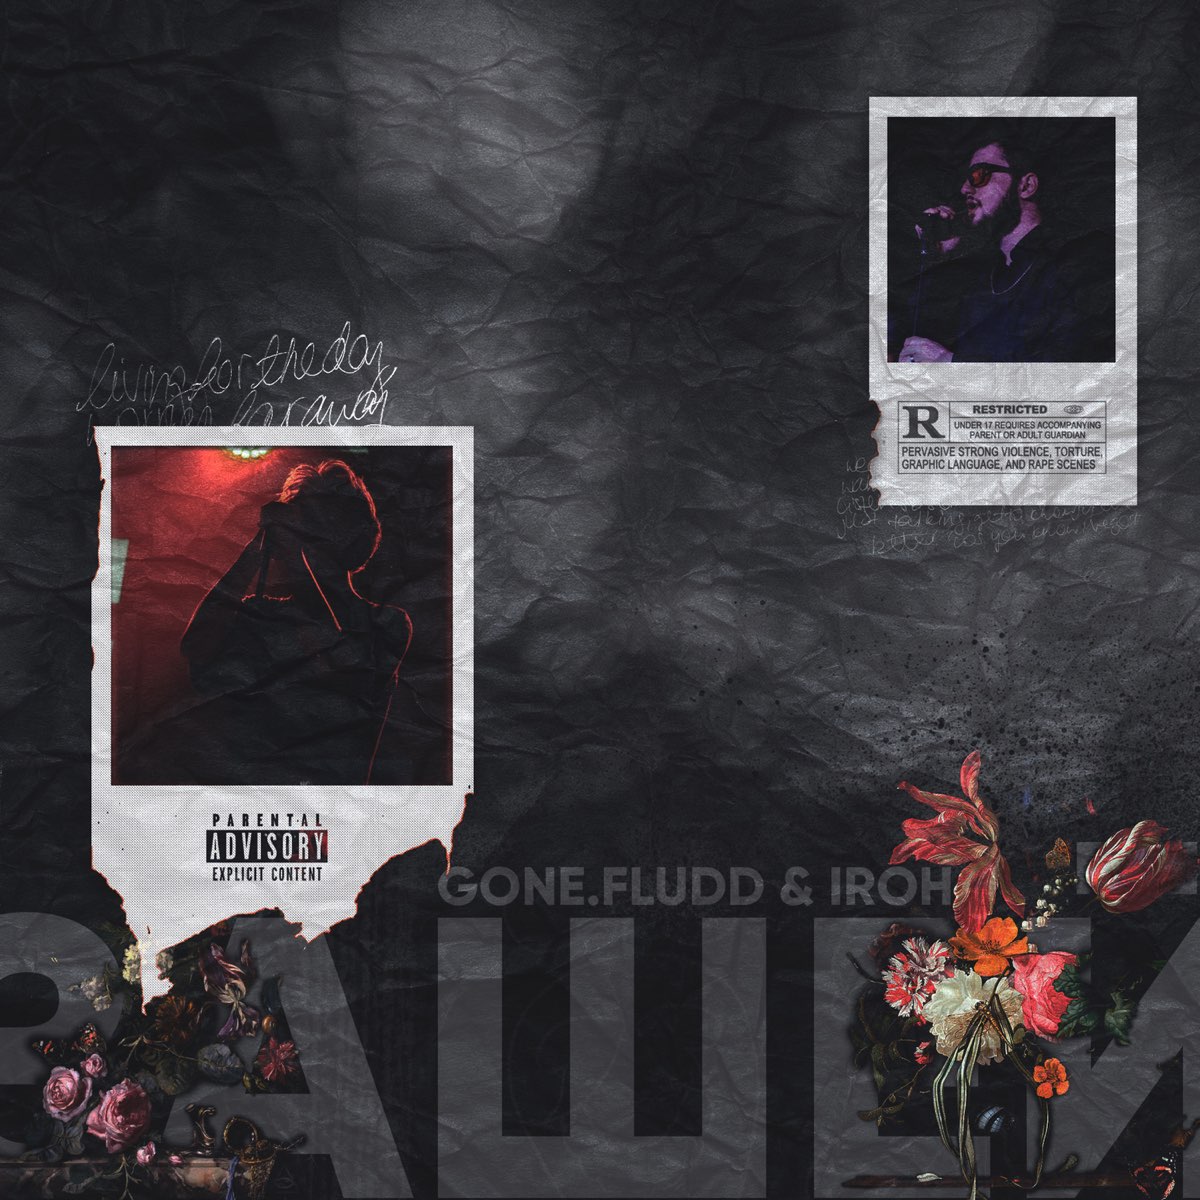 GONE.Fludd & IROH Зашей cover artwork